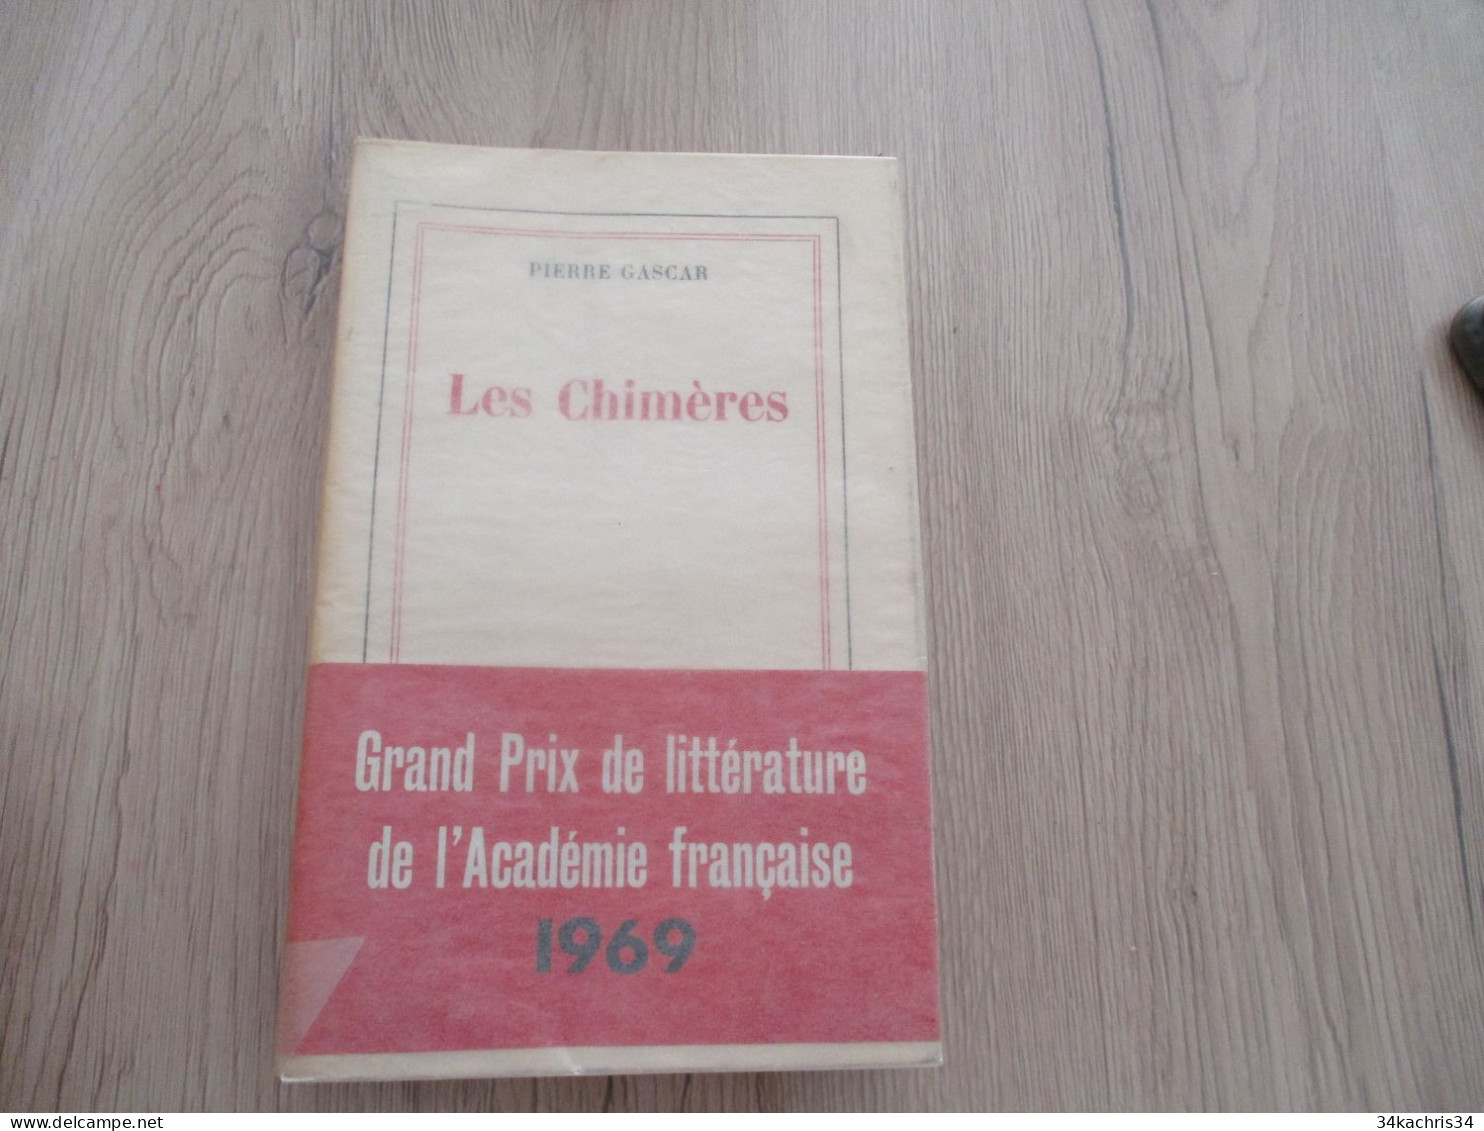 Envoi De Pierre Gascar Le Dieu Sel Edition Originale Gallimard NRF226p 1969 - Libri Con Dedica